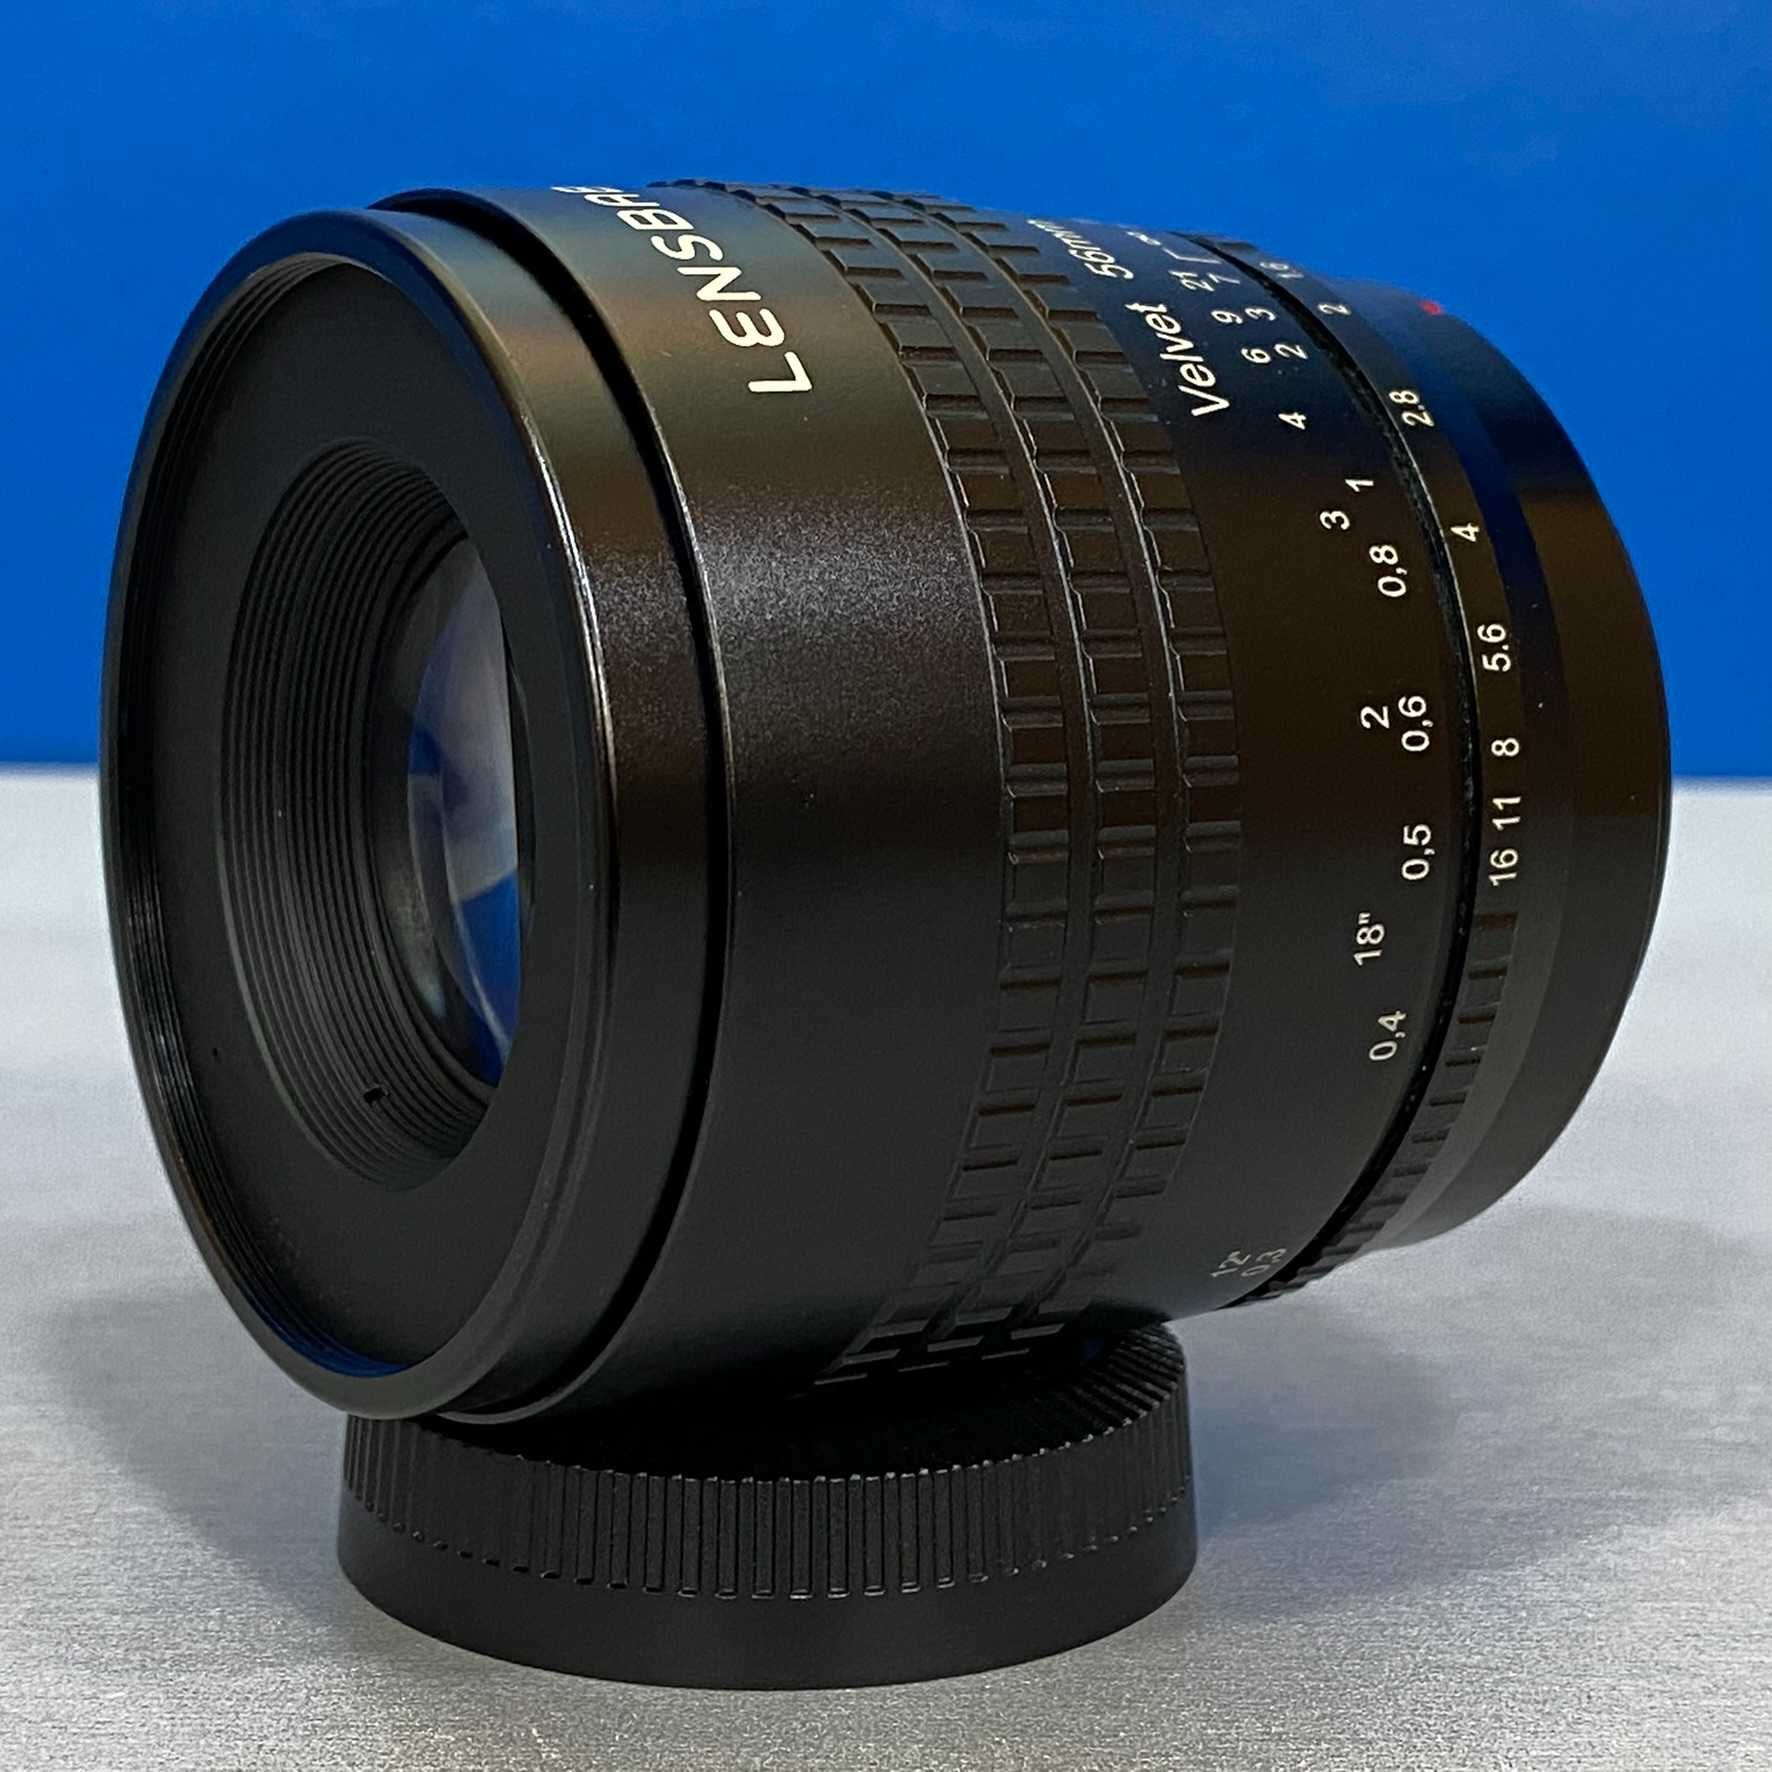 Lensbaby Velvet 56mm f/1.6 (Fujifilm)